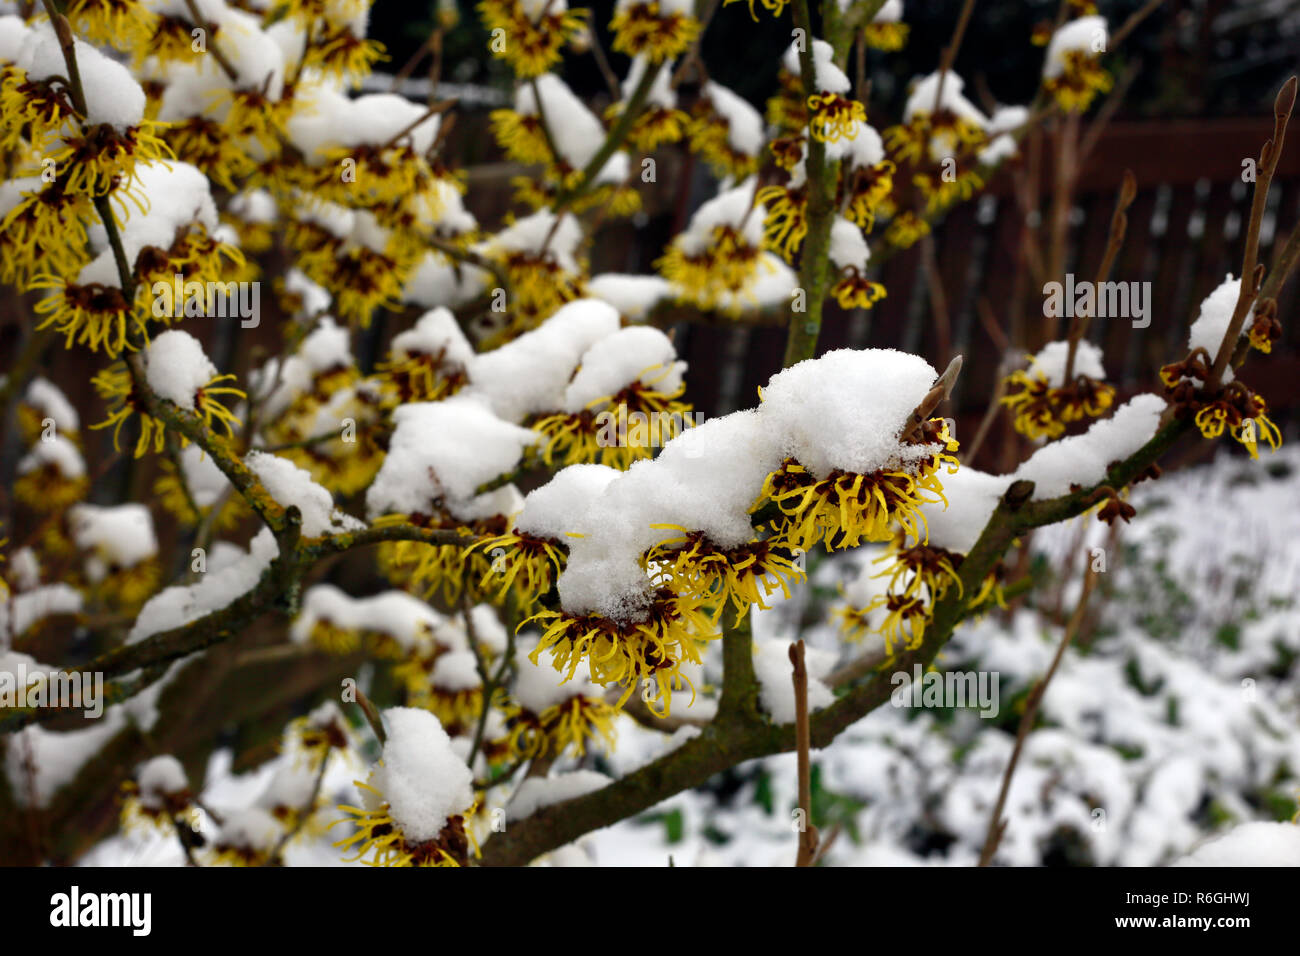 witch hazel (witch hazel),flowering shrub in january with snow hoods Stock Photo